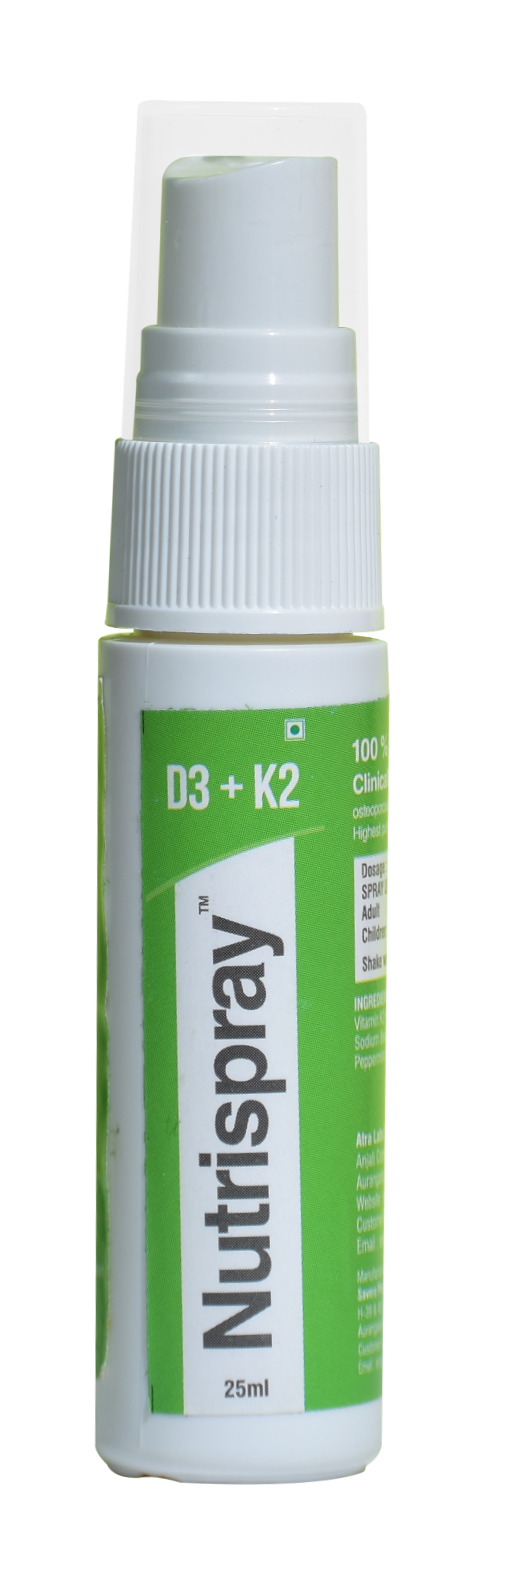 Nutrispray™ D3 + K2 Mouth Spray